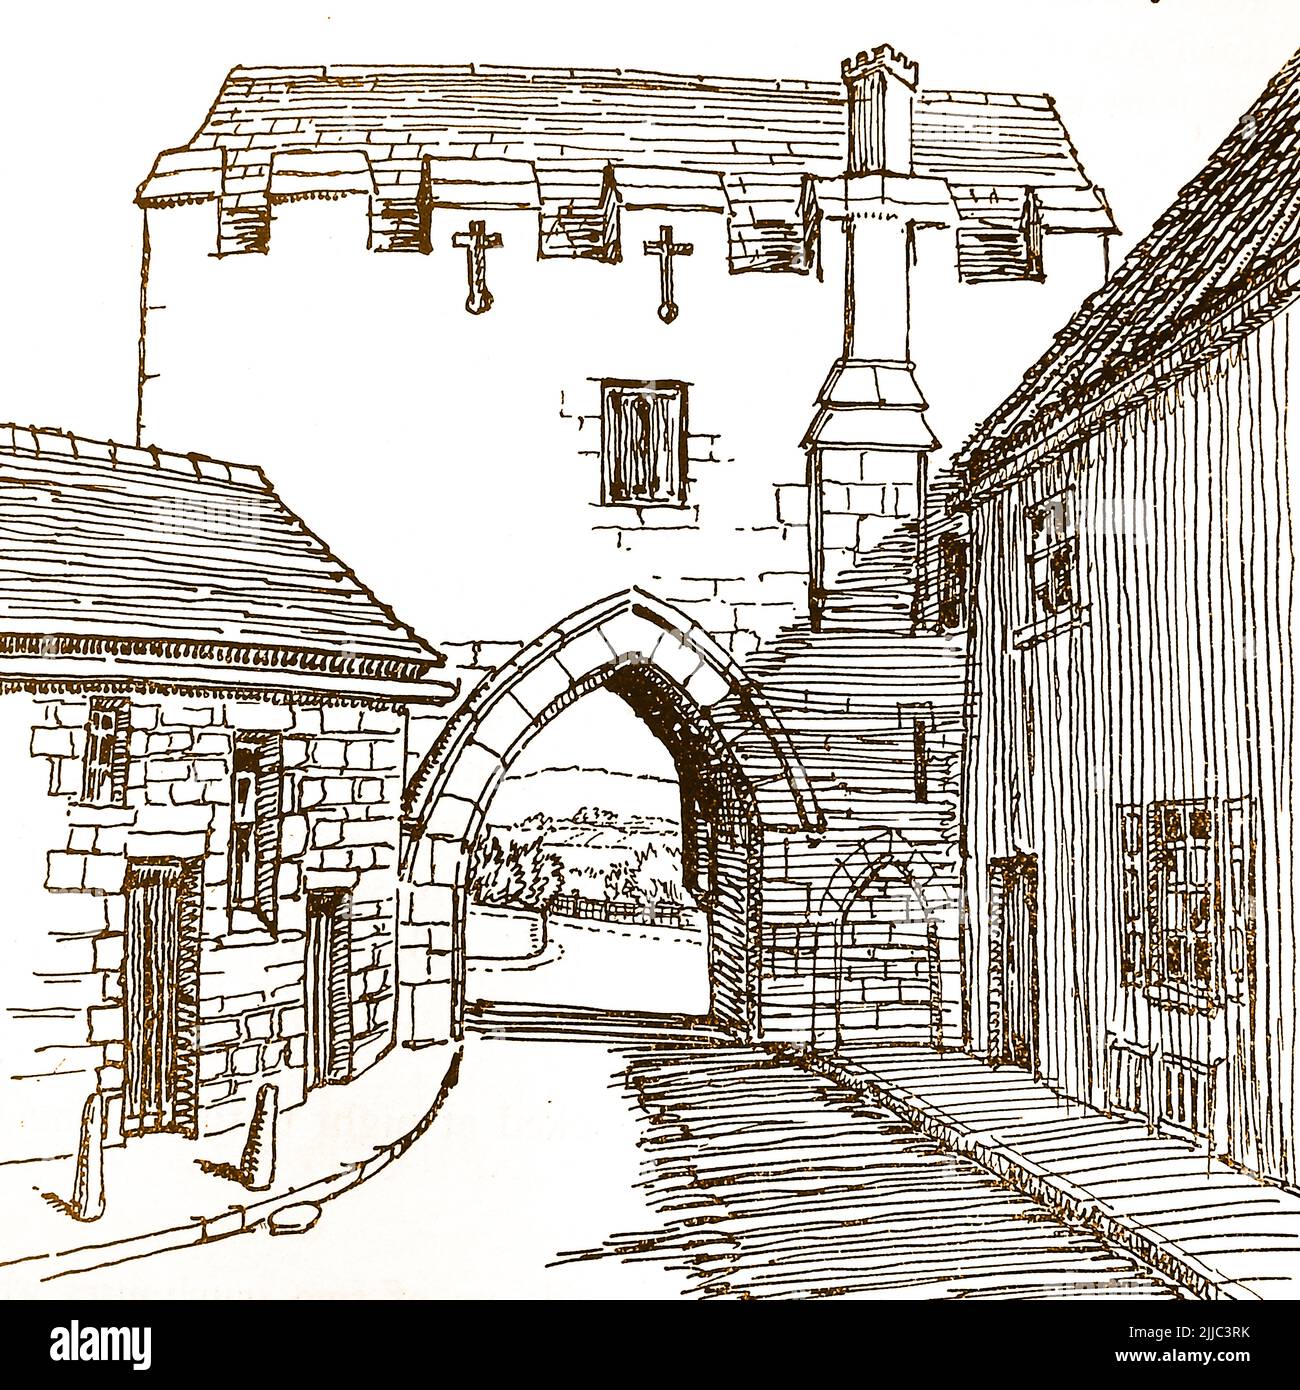 Geschichte von Lincoln, England - eine alte Skizze des Pottergate Arch (Nordseite), wie er einst in der Mitte des 15.. Jahrhunderts erbaut, 1884 und wieder im späten 20.. Jahrhundert restauriert wurde. Stockfoto